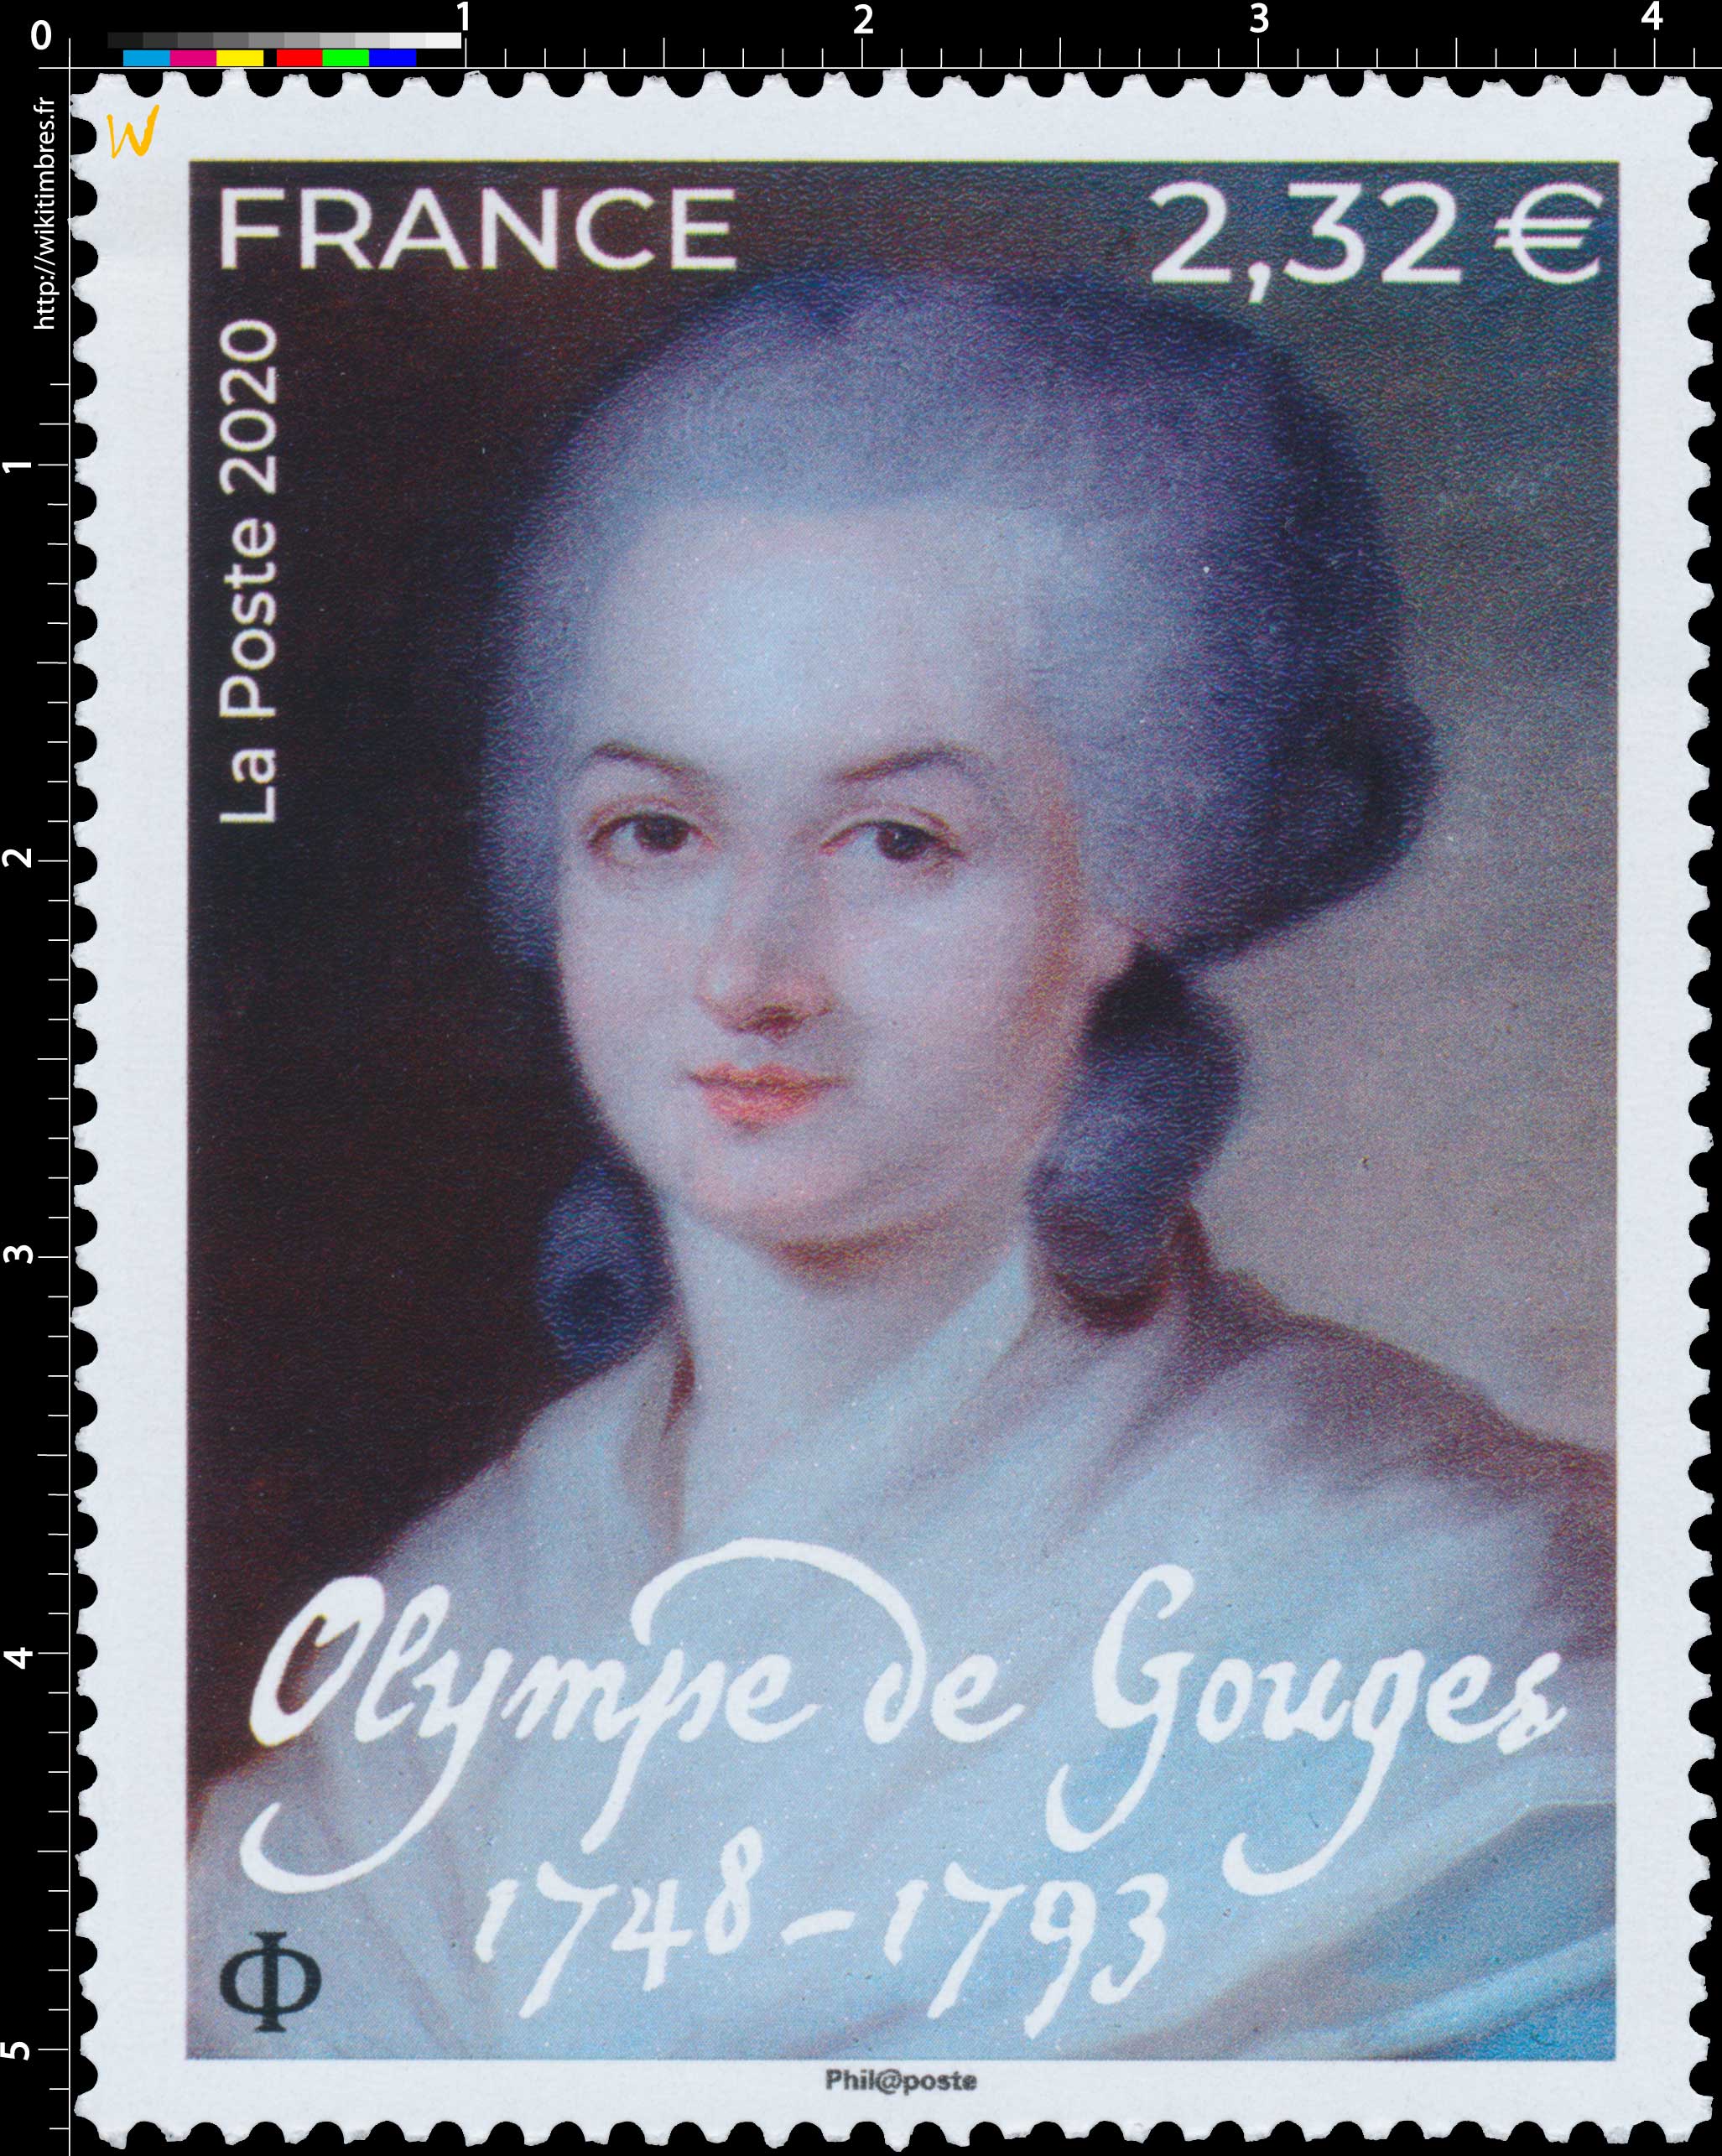 2020 Olympe de Gouges 1748 - 1793